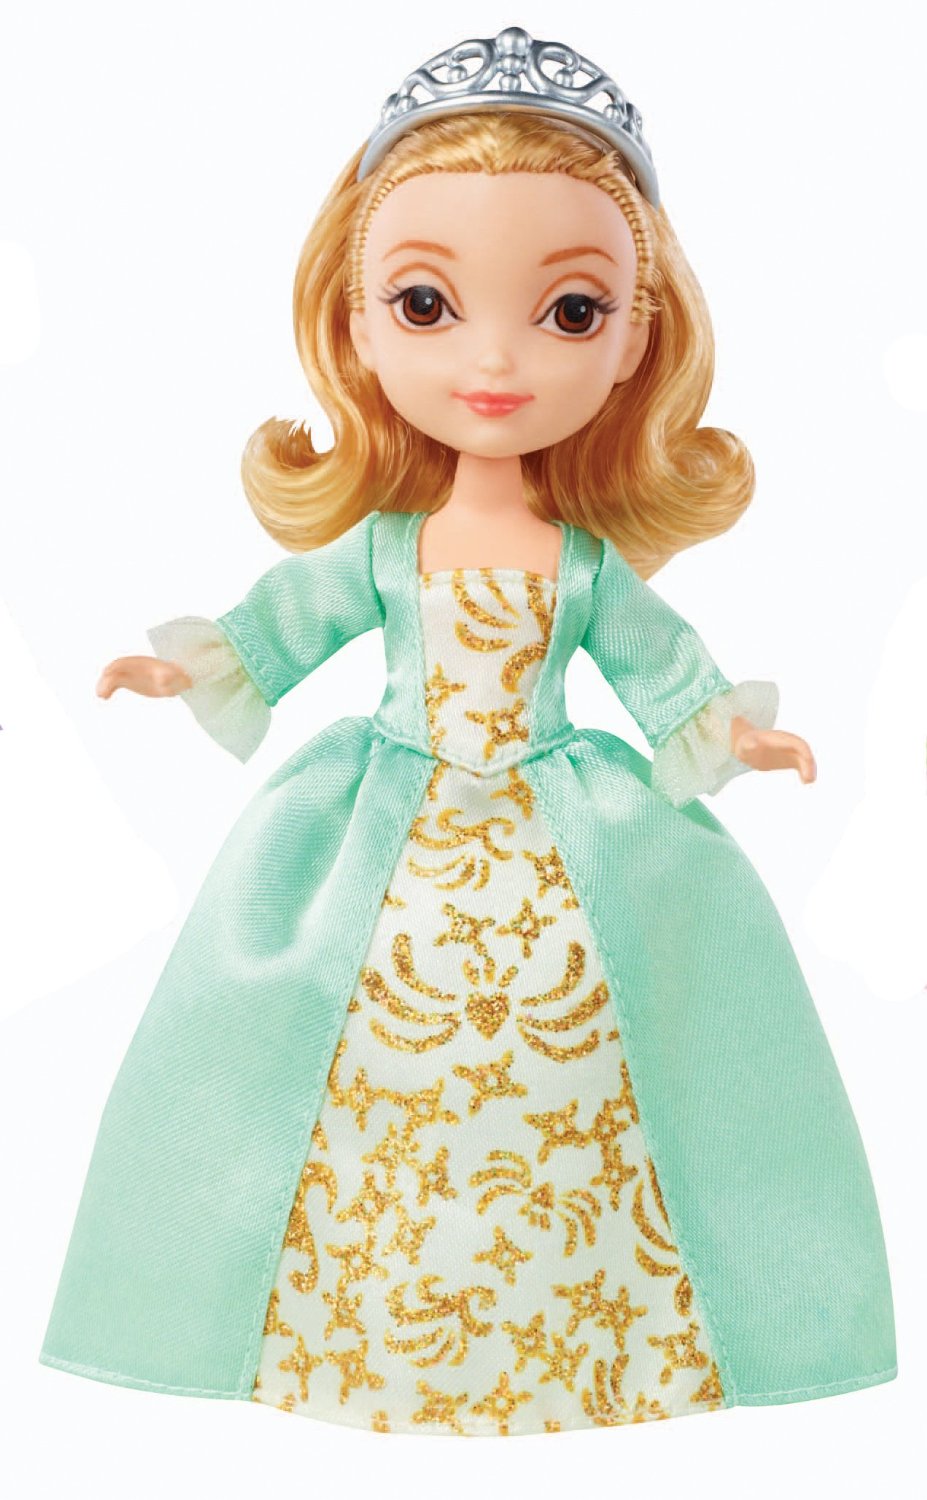 Nàng công chúa Amber trong ngày cưới của vua cha - Disney Sofia The First Amber 5-inch Doll